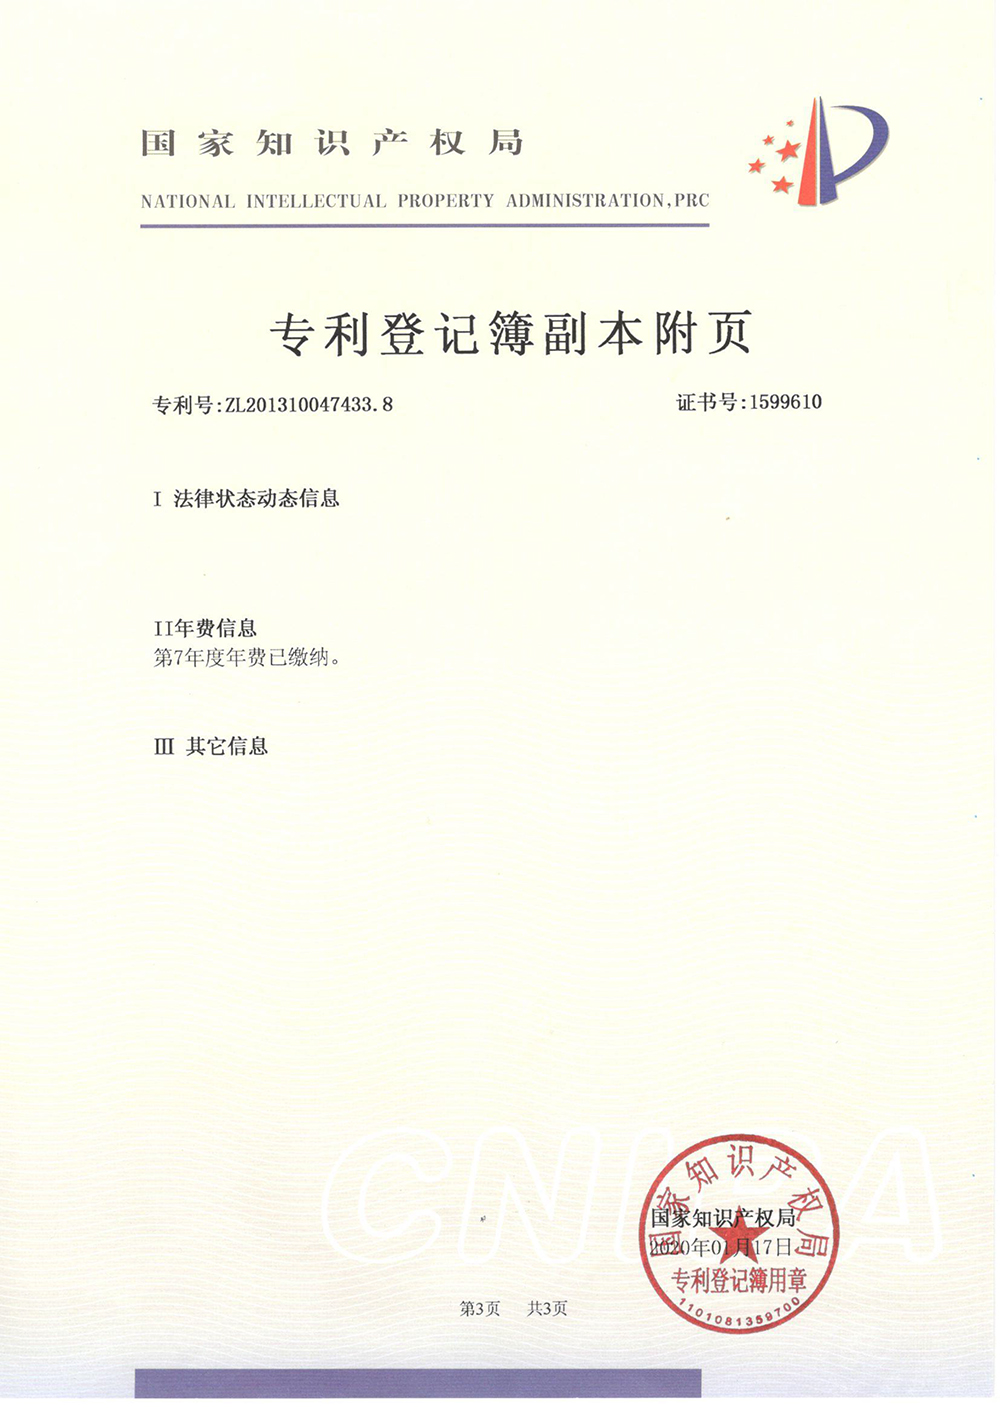 甲基咪唑的方法-专利登记薄-3_上海浩登材料股份有限公司